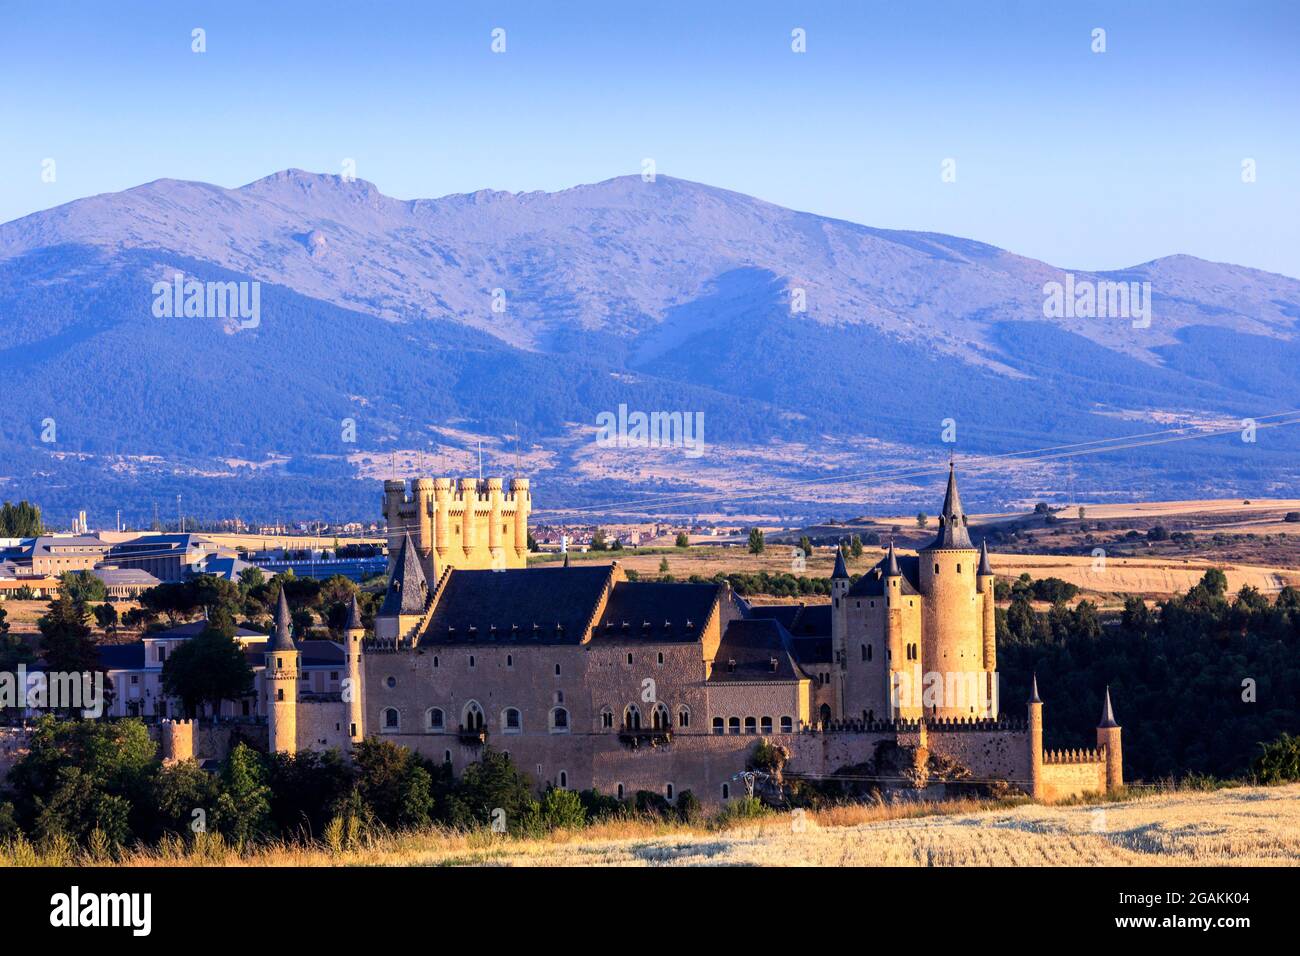 Alcazar von Segovia, eine Renaissancefestung in der Stadt Segovia. Es ist ein Weltkulturerbe, das als Archiv und Museum genutzt wird. Spanien. Stockfoto